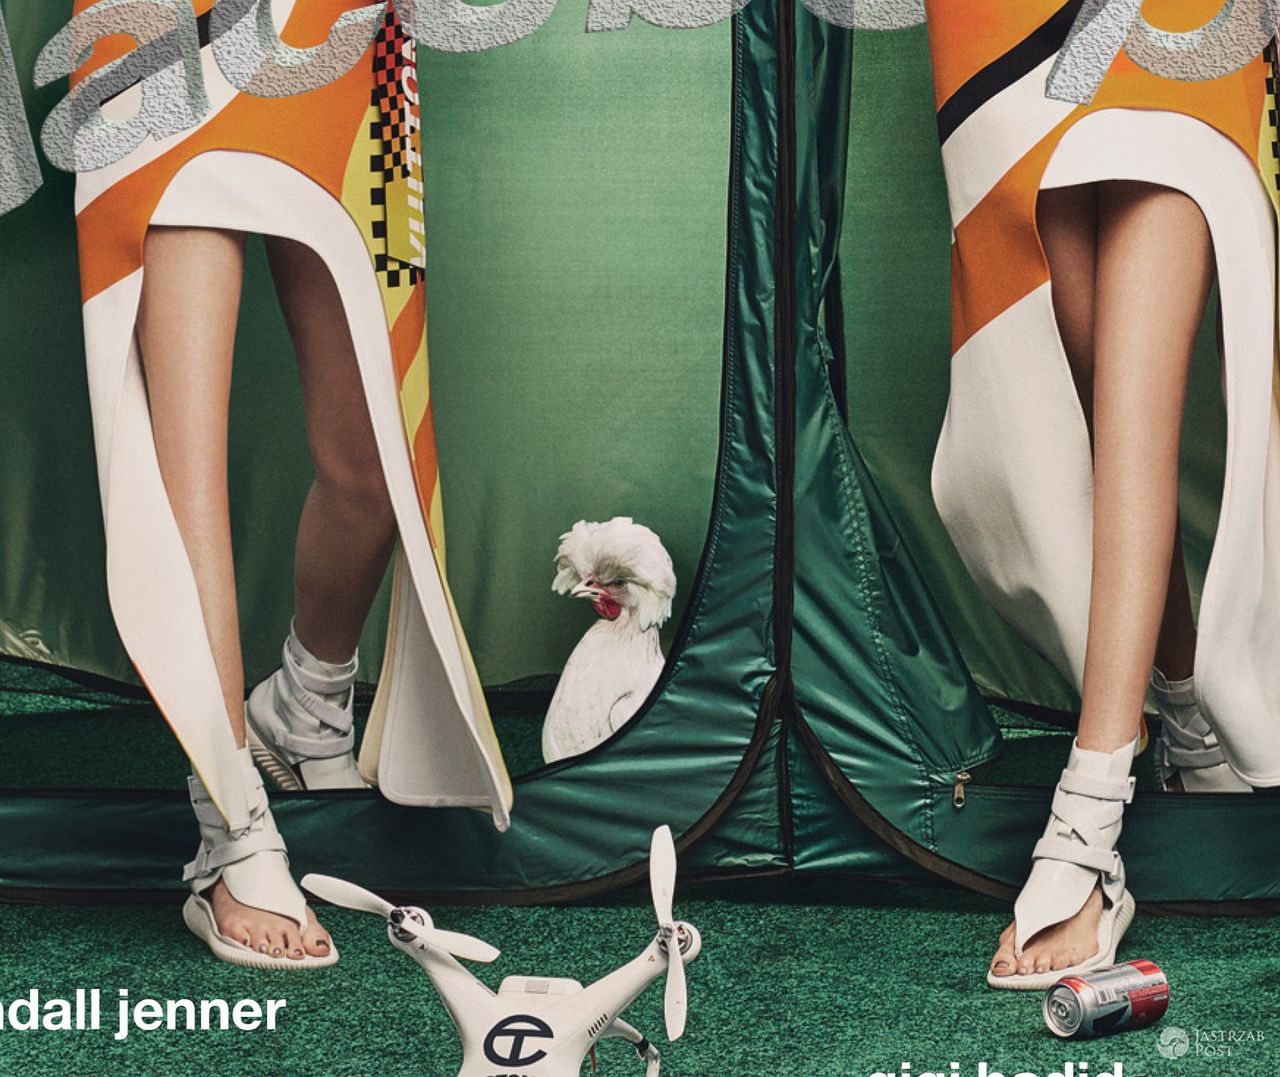 Wyretuszowane nogi Gigi Hadid i Kendall Jenner